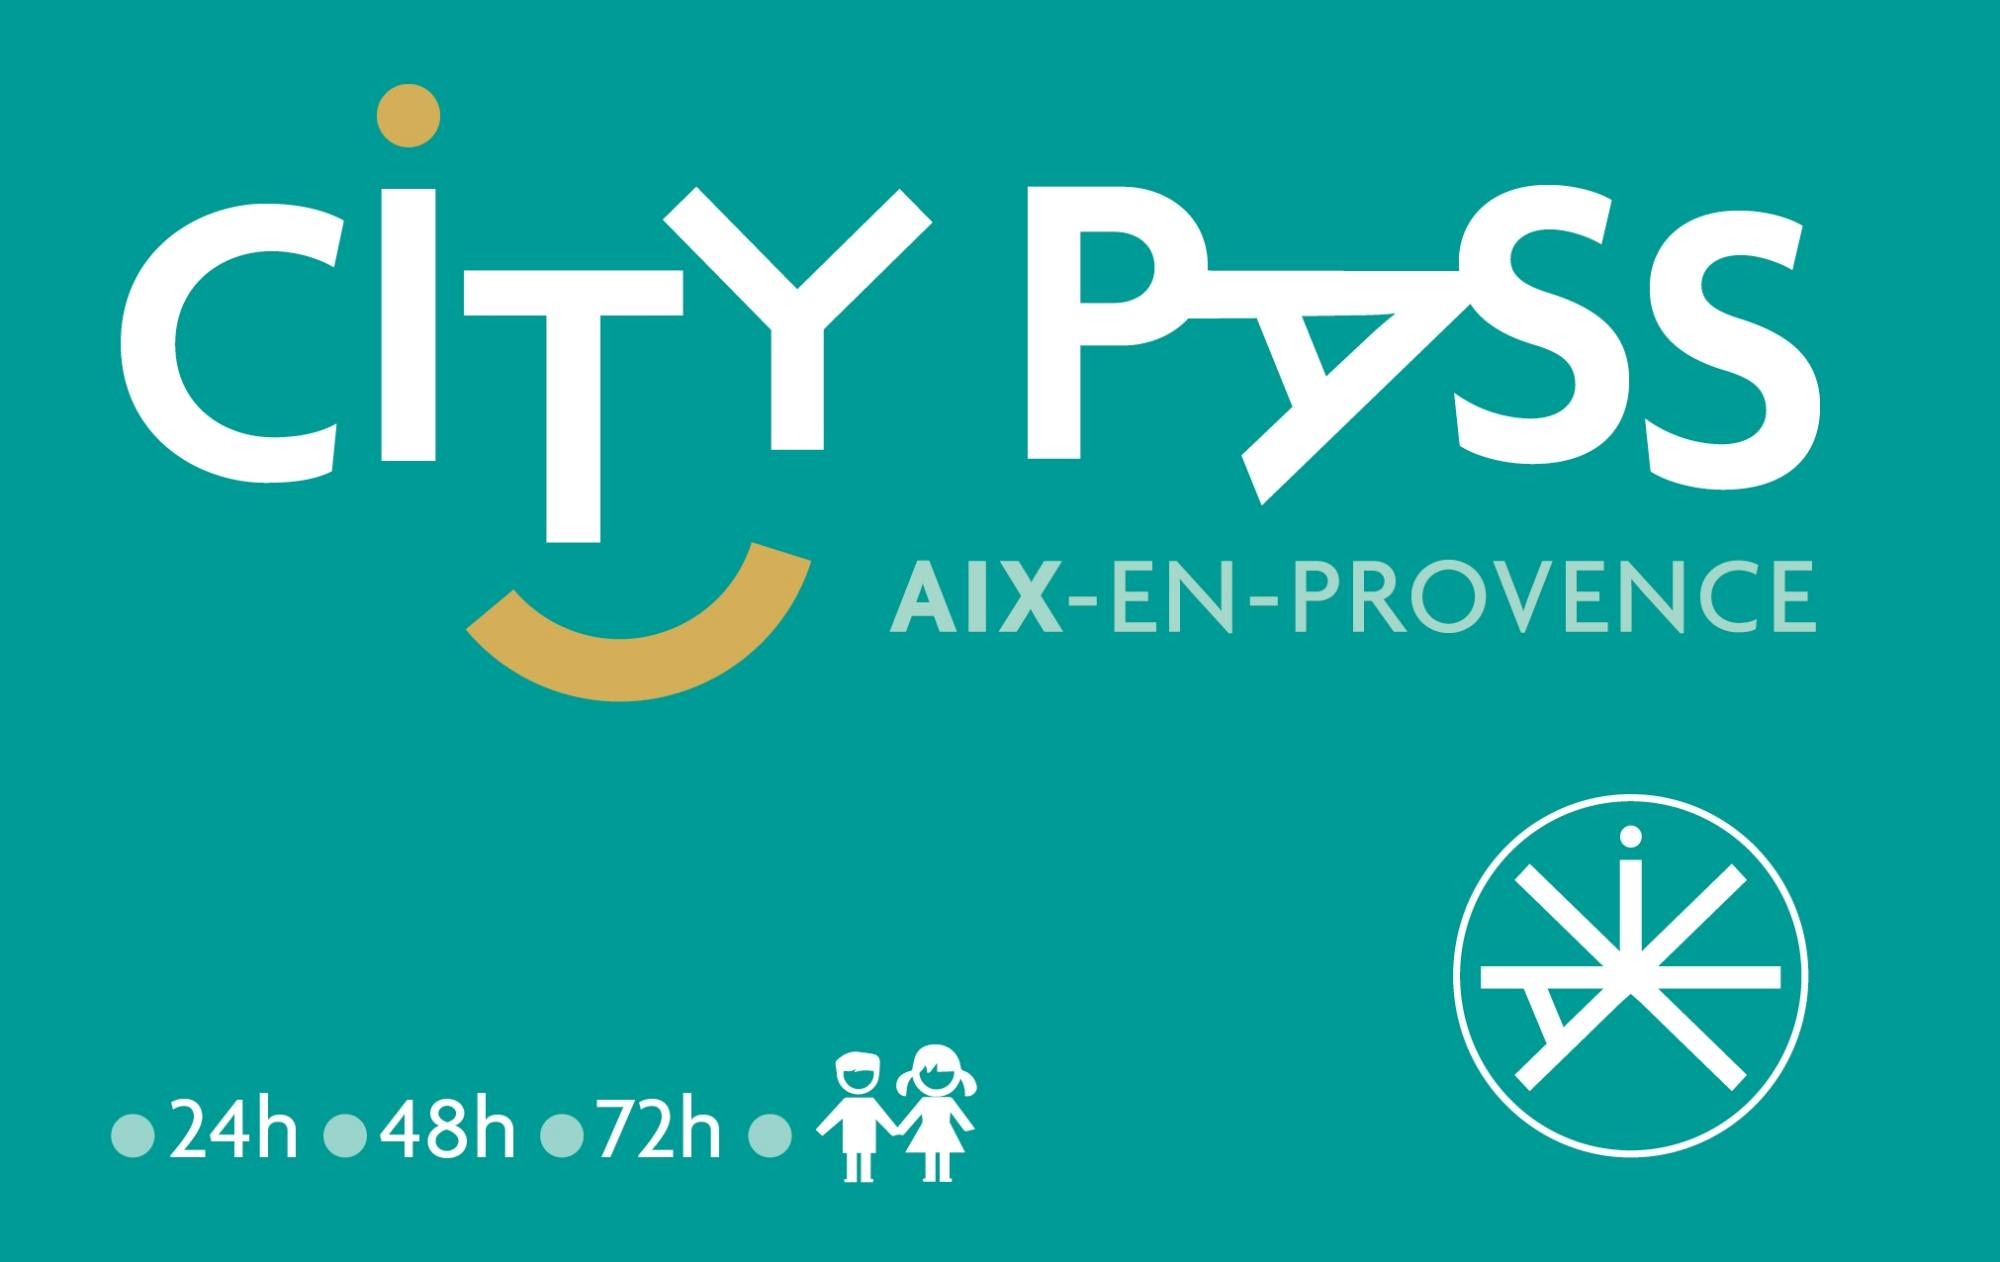 City Pass Aix-en-Provence 24h, 48h, 72h